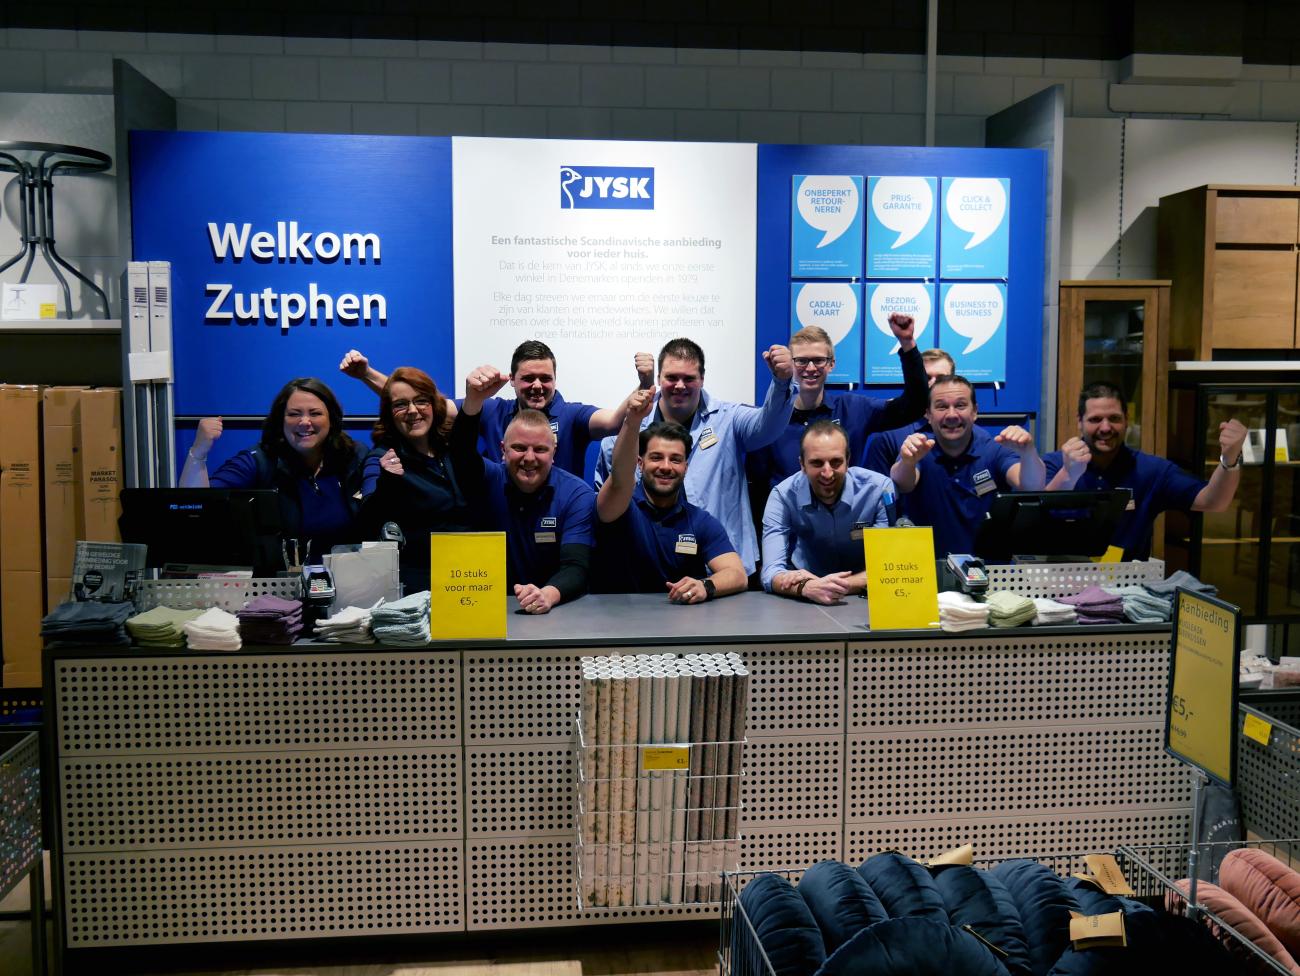 Het team in Zutphen vlak voor de heropening.